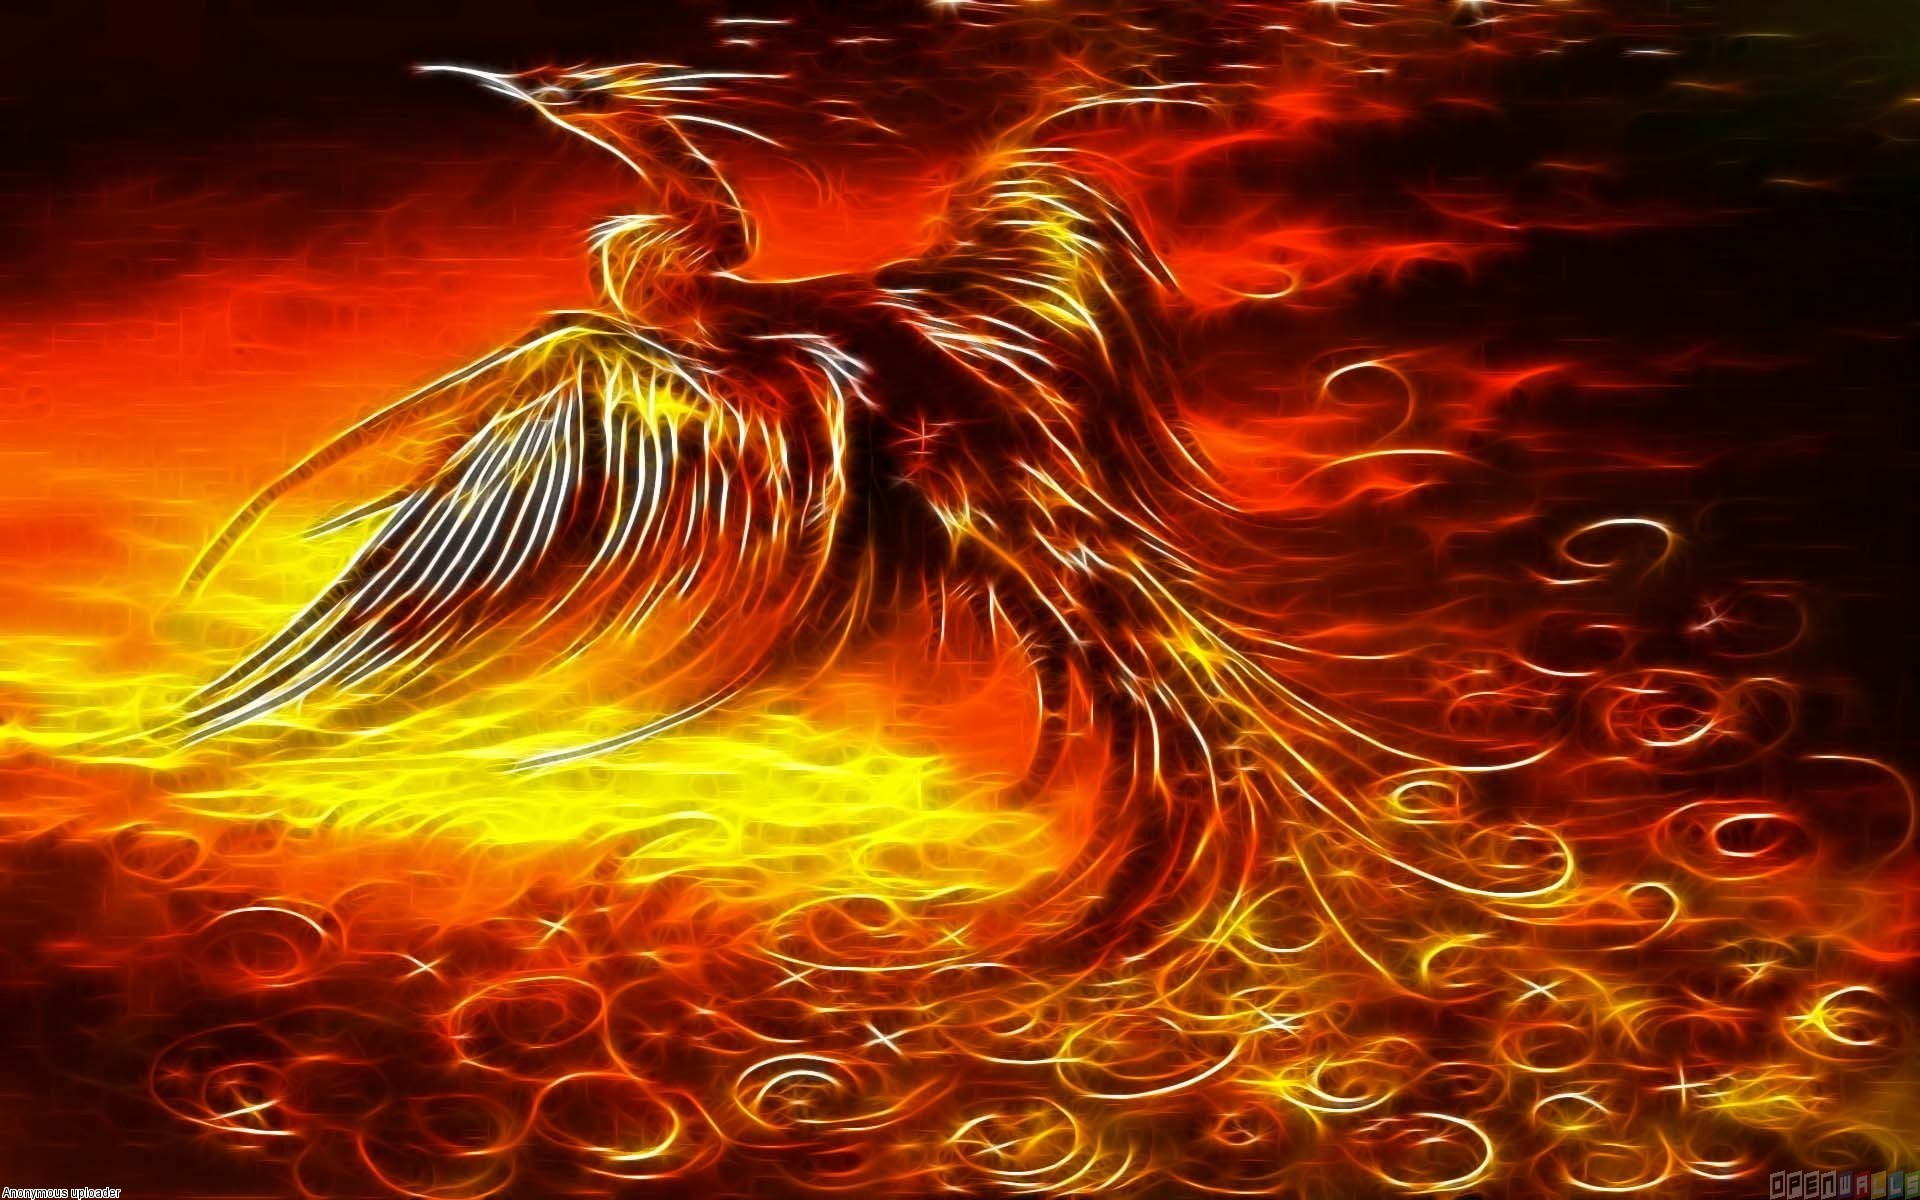 bird image wallpaper phoenix 1920x1200